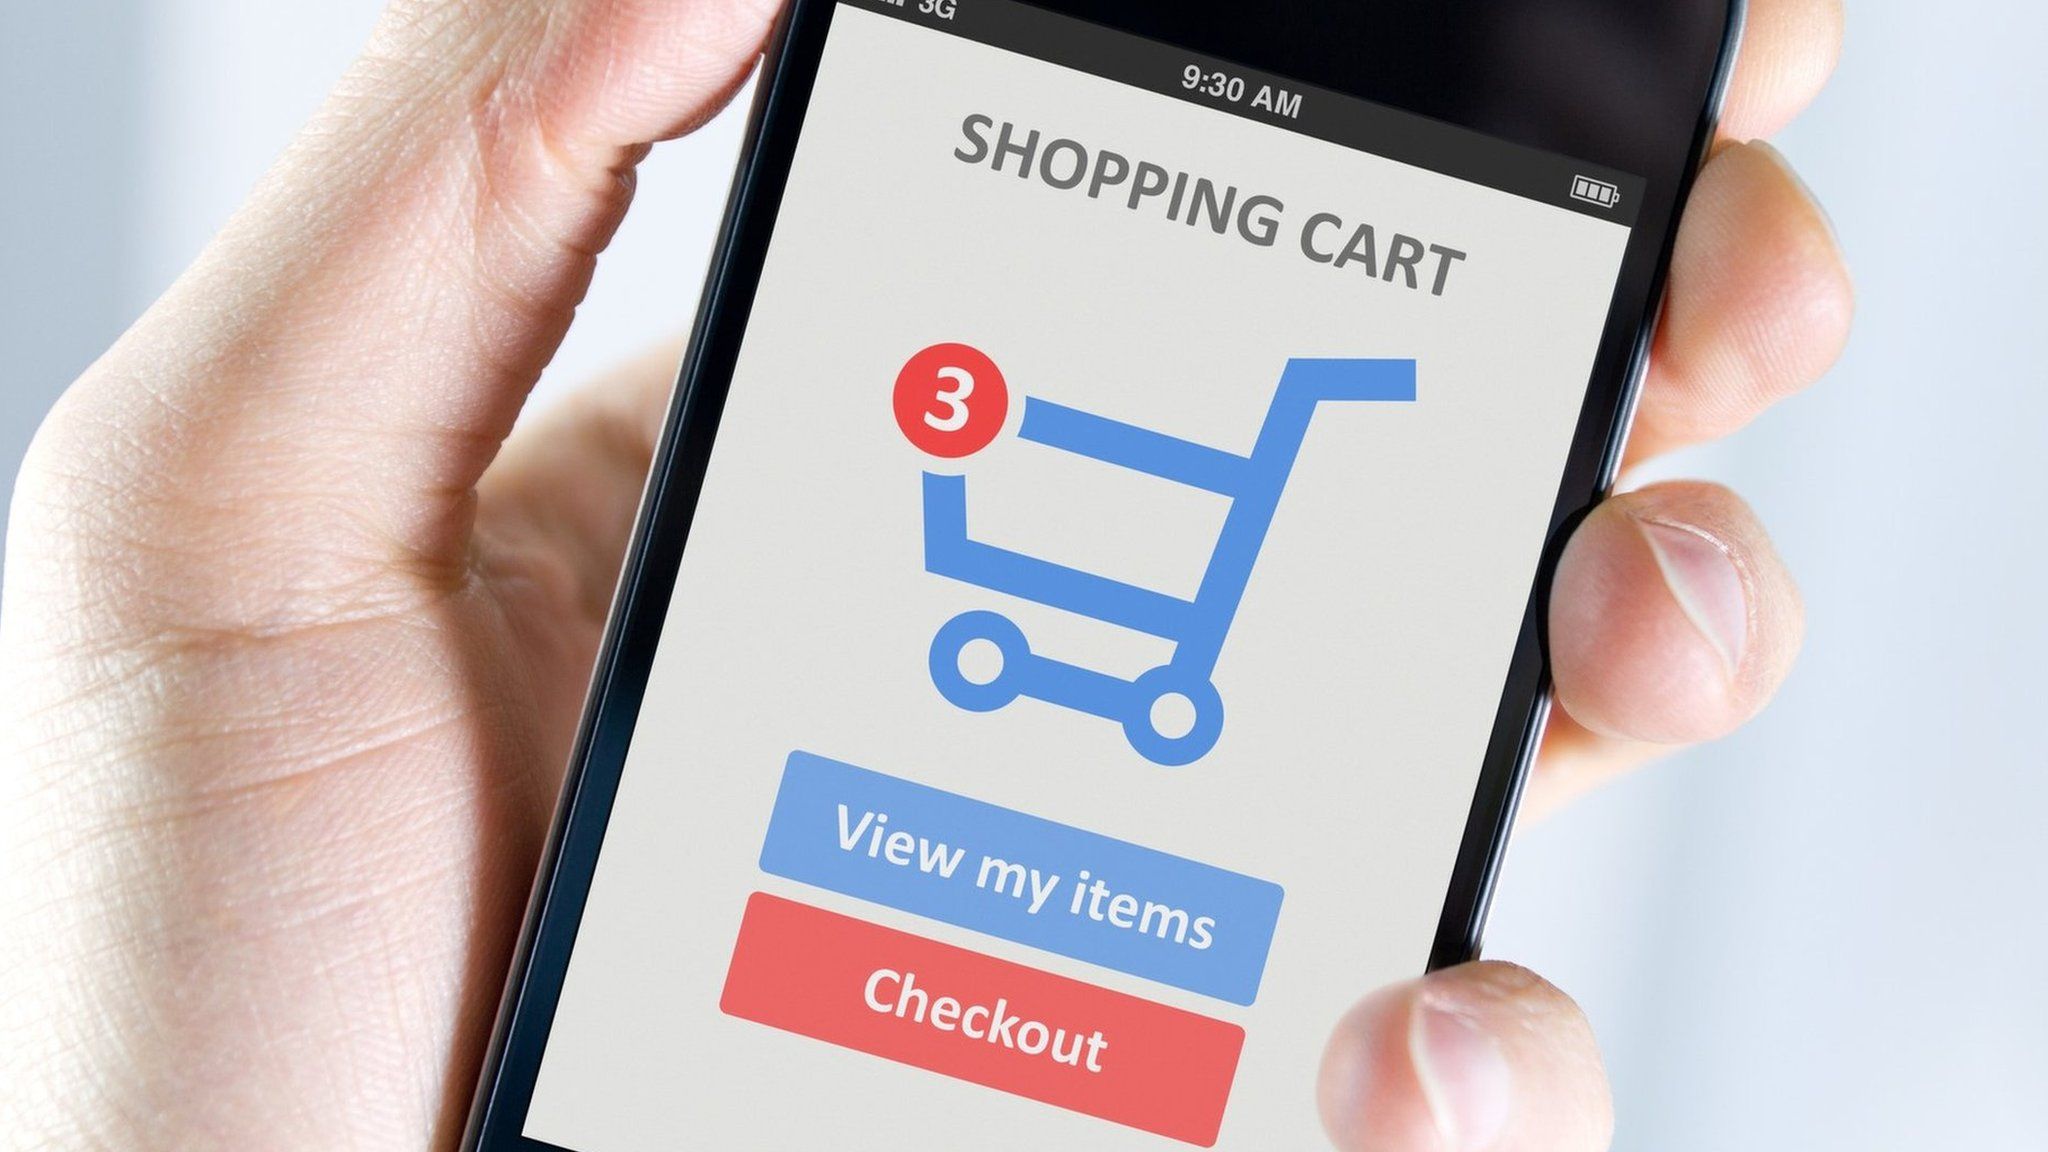 Shopping cart app